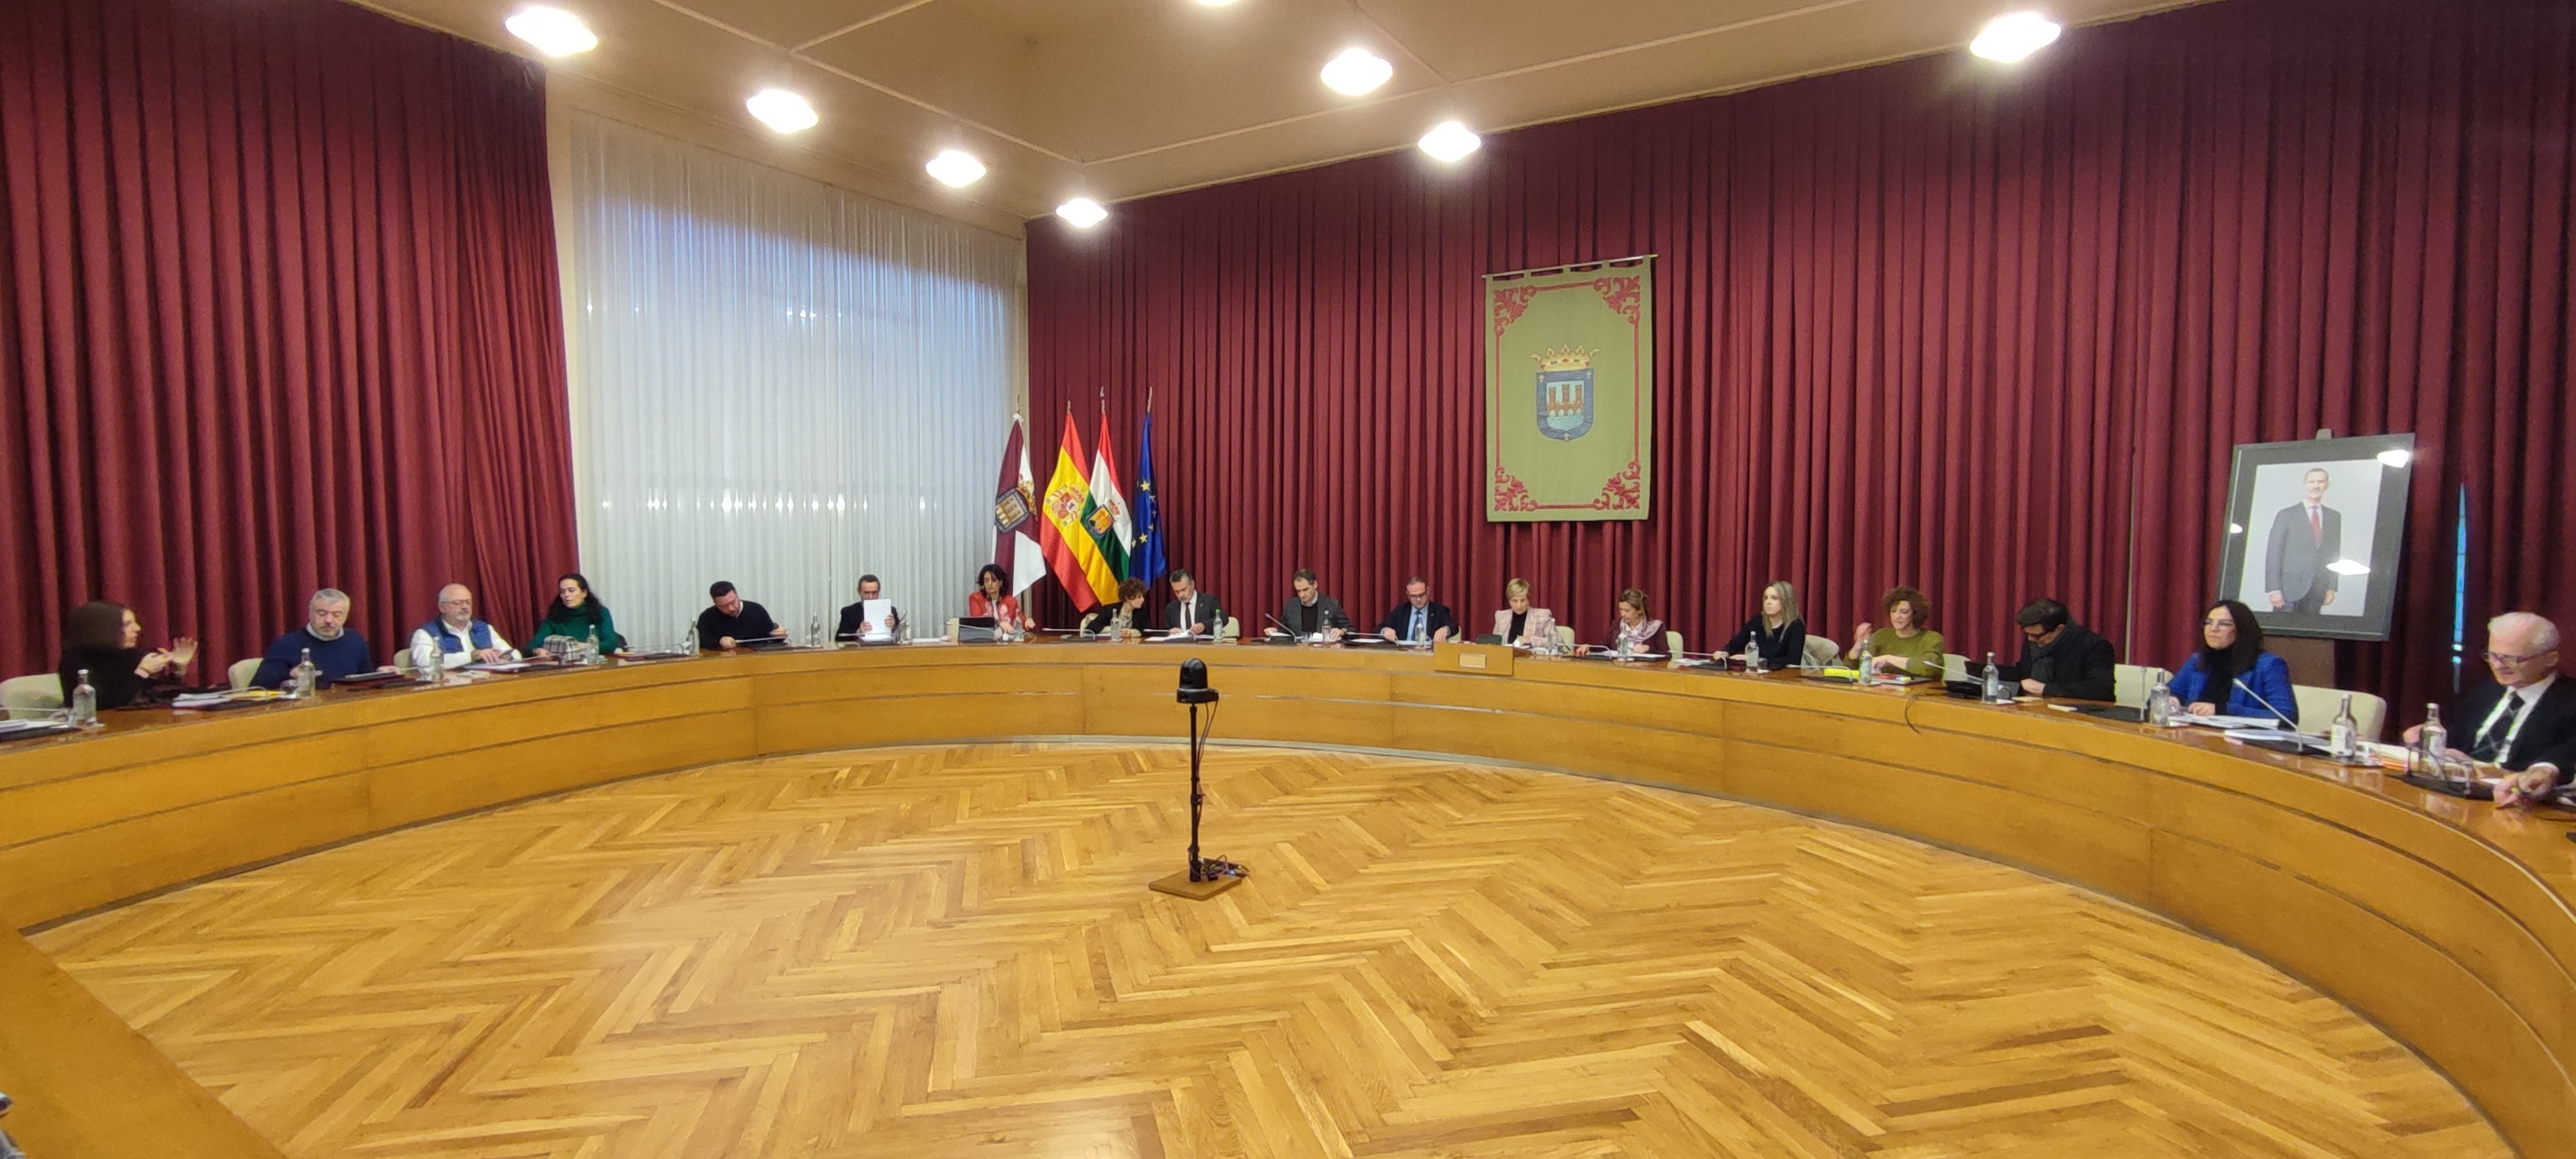 El Ayuntamiento de Logroño aprueba un presupuesto de 199,5 millones de  euros para 2024 con 31 millones en inversiones y “retos y compromisos para  crecer como ciudad” Ayuntamiento de Logroño